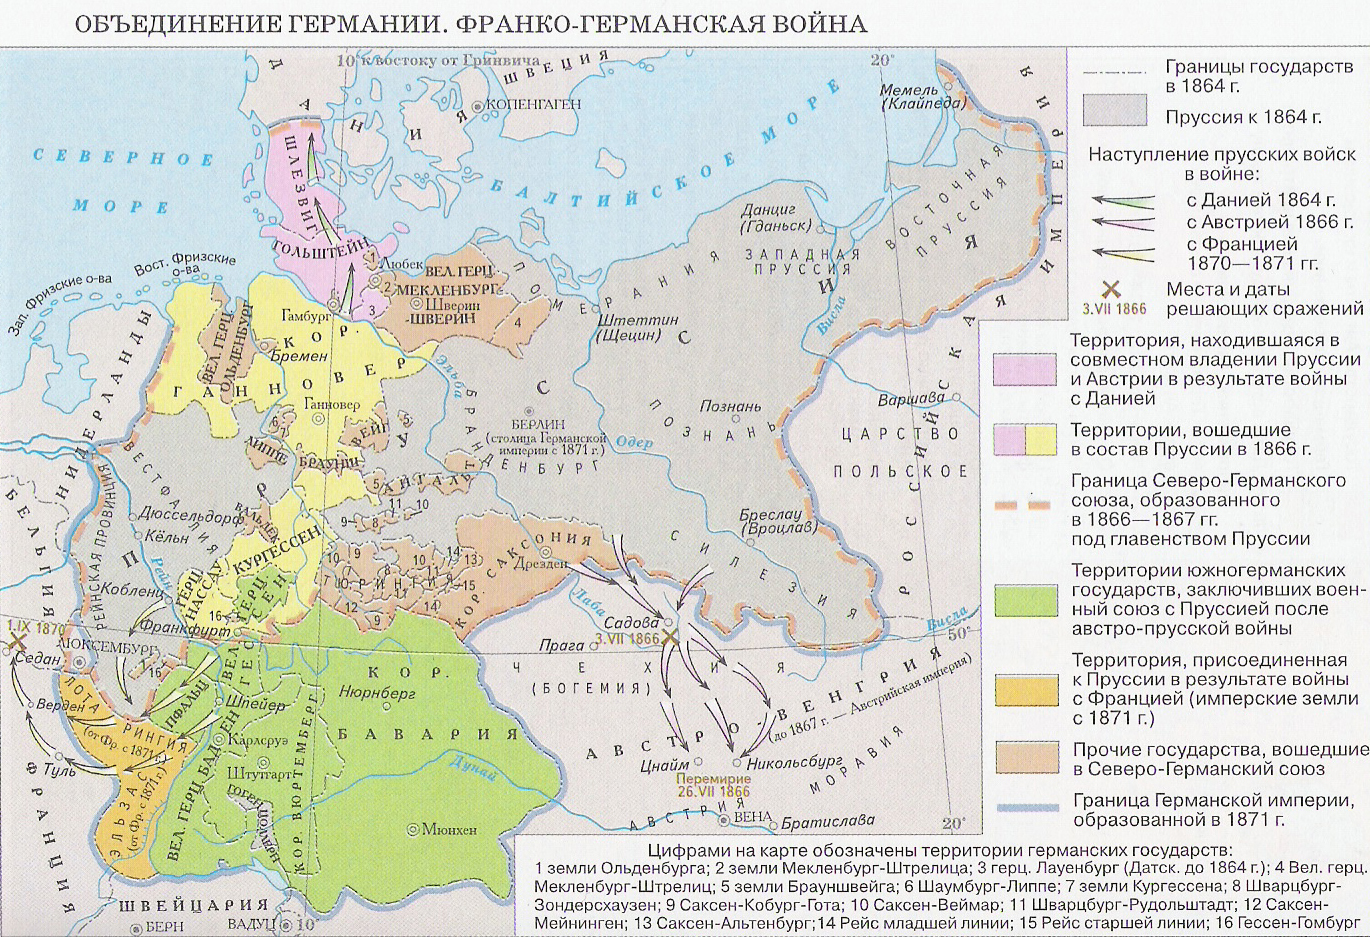 Германия 9 век. Объединение Германии Пруссия 1871. Этапы объединения Германии в 19 веке карта. Объединение Германии 1871 карта. Объединение Германии карта 1870.